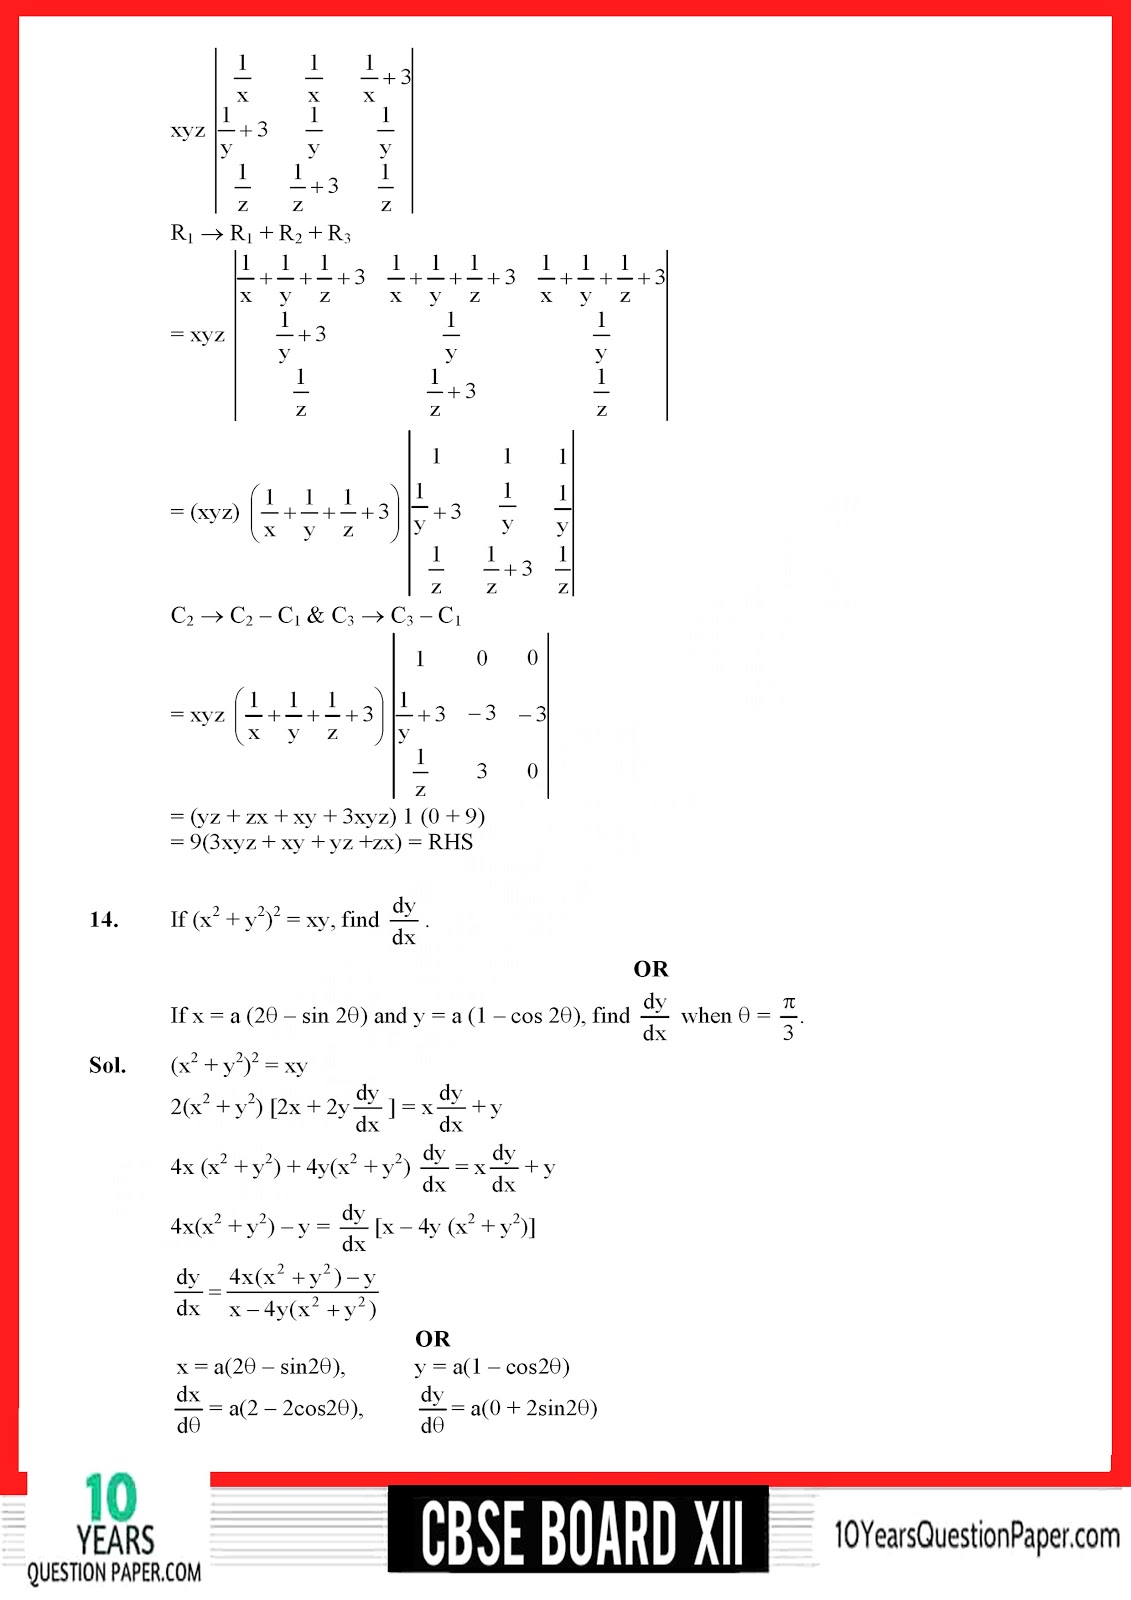 CBSE Class 12 Mathematics 2018 Solved Paper